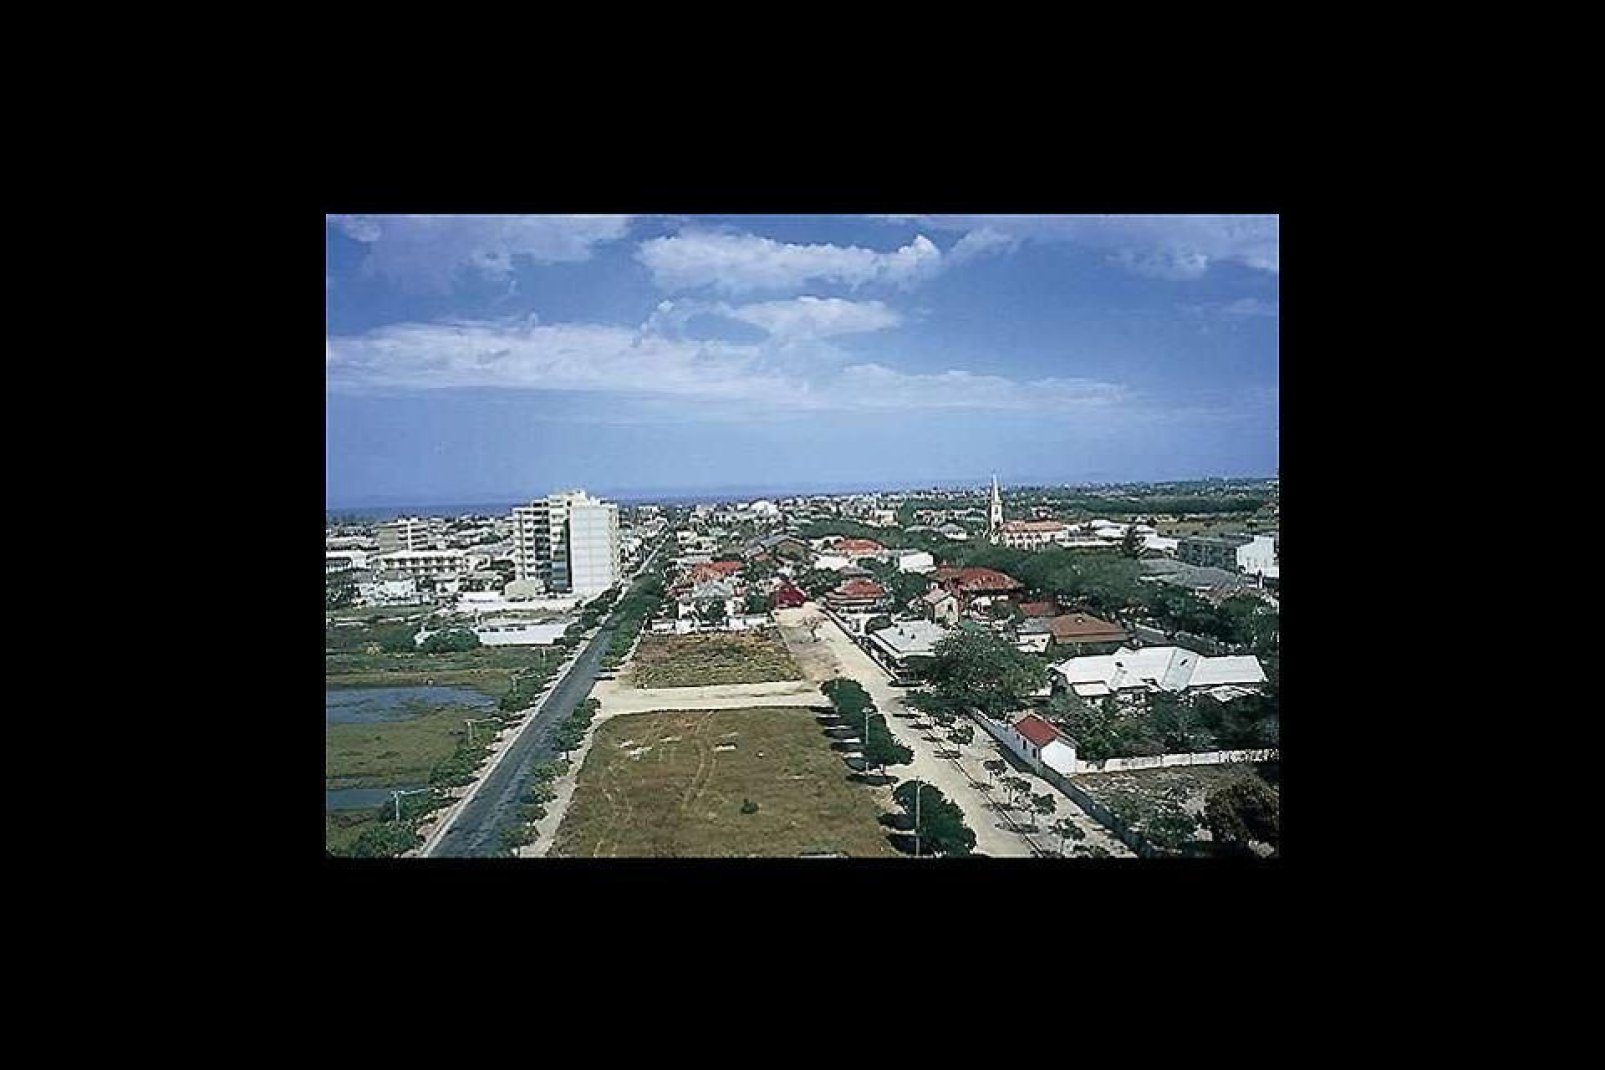 Beira ist die zweitgrte Stadt von Mosambik.